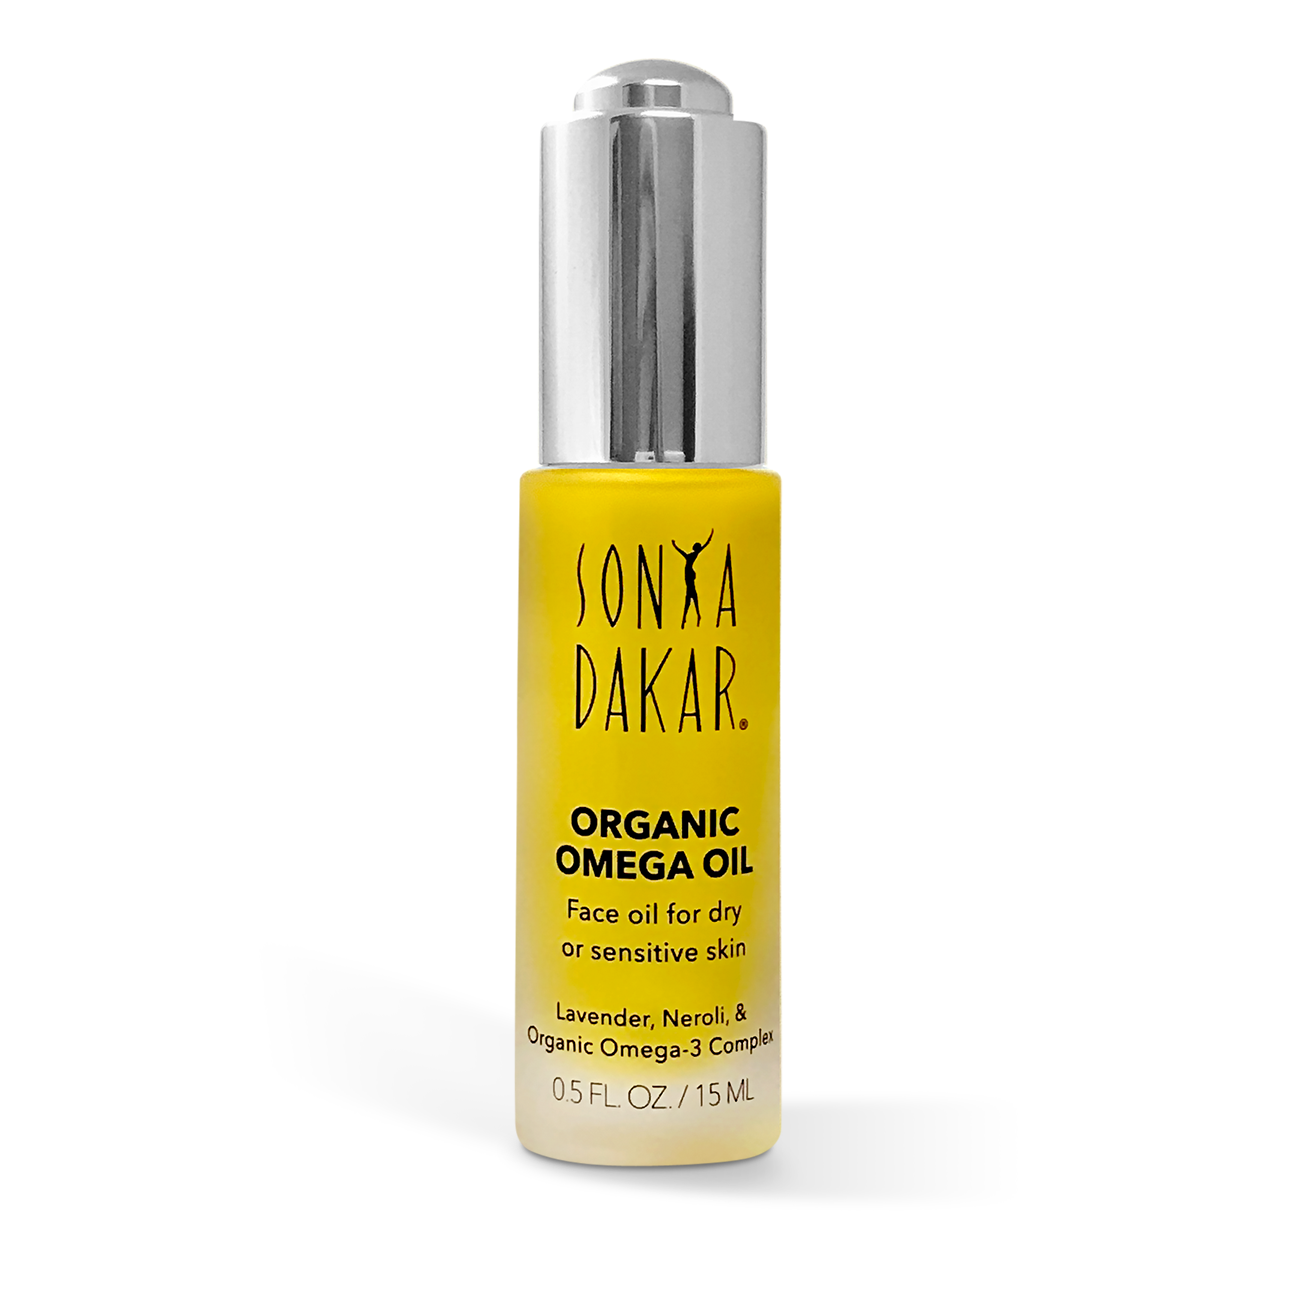 Sonya Dakar organic face oil for Dry & Sensitive Skin